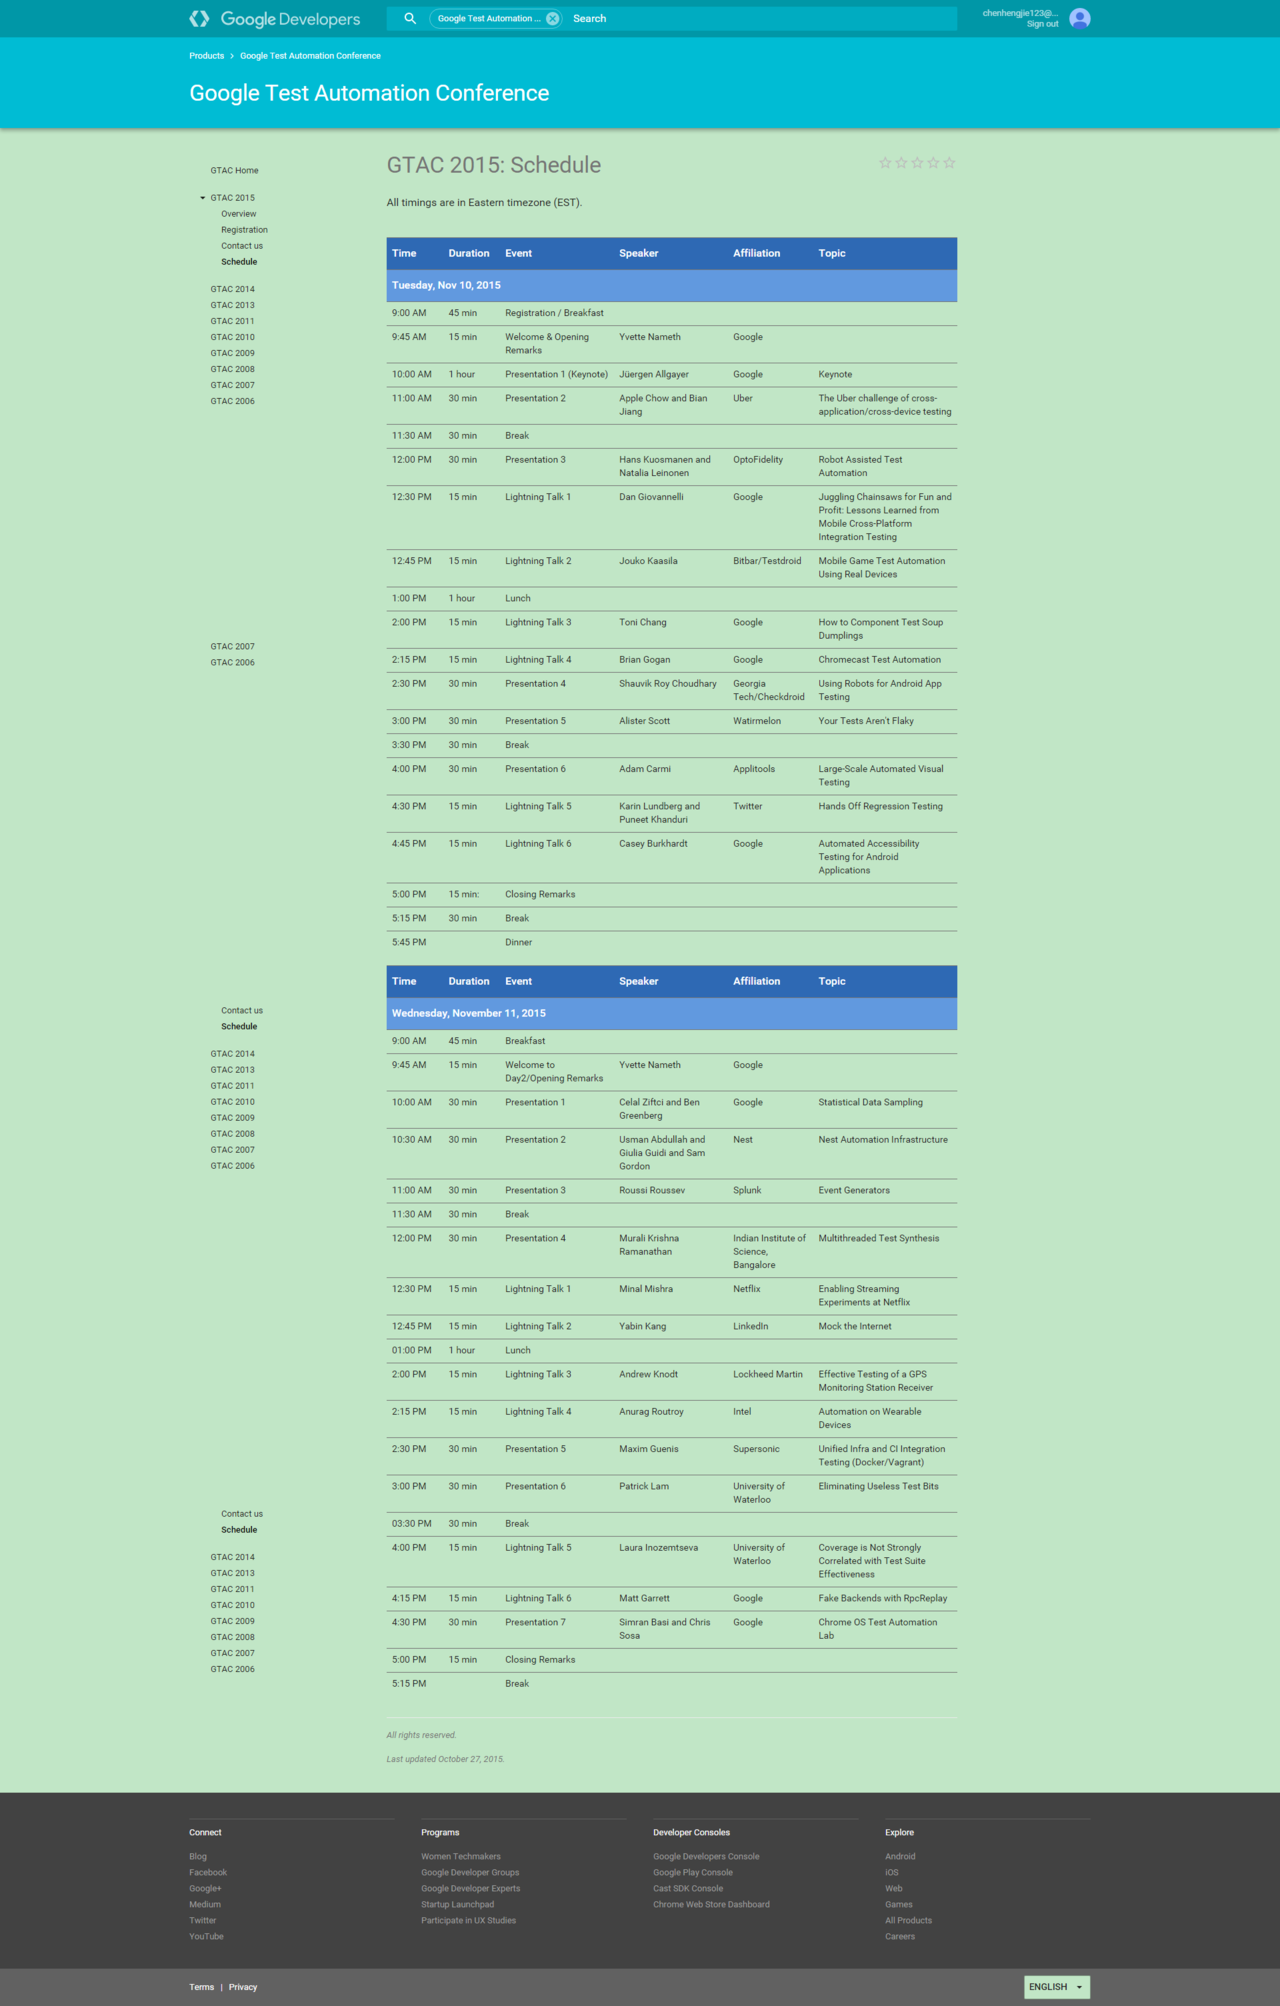 GTAC 2015 Schedule